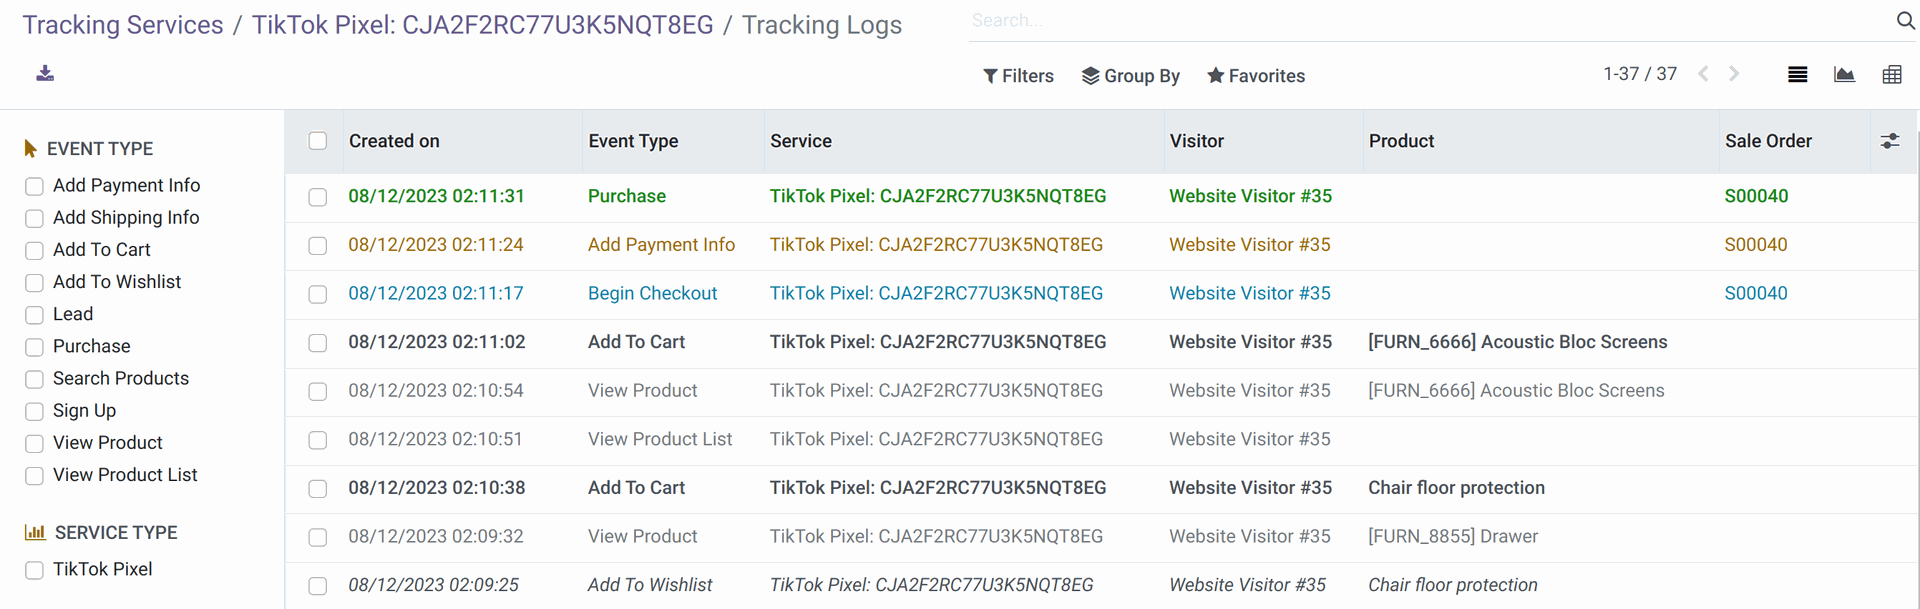 Odoo TikTok Pixel tracking - internal logging in 16.0